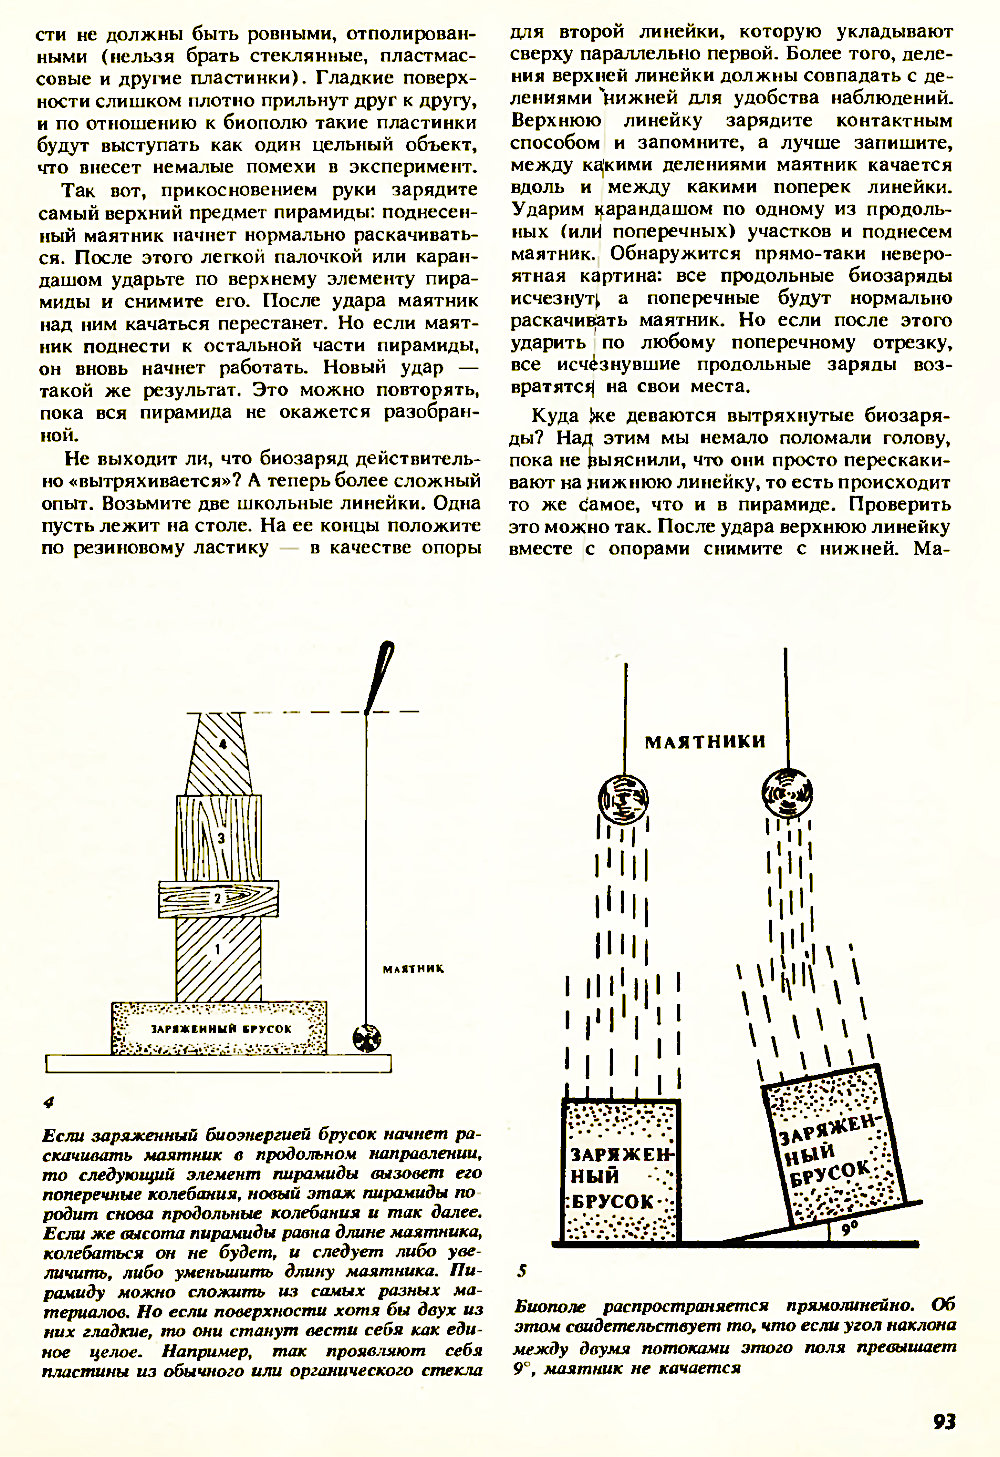 Странные проявления биополя. Н. Адырхаев. Химия и жизнь, 1990, №11, с.91-94. Фотокопия №3